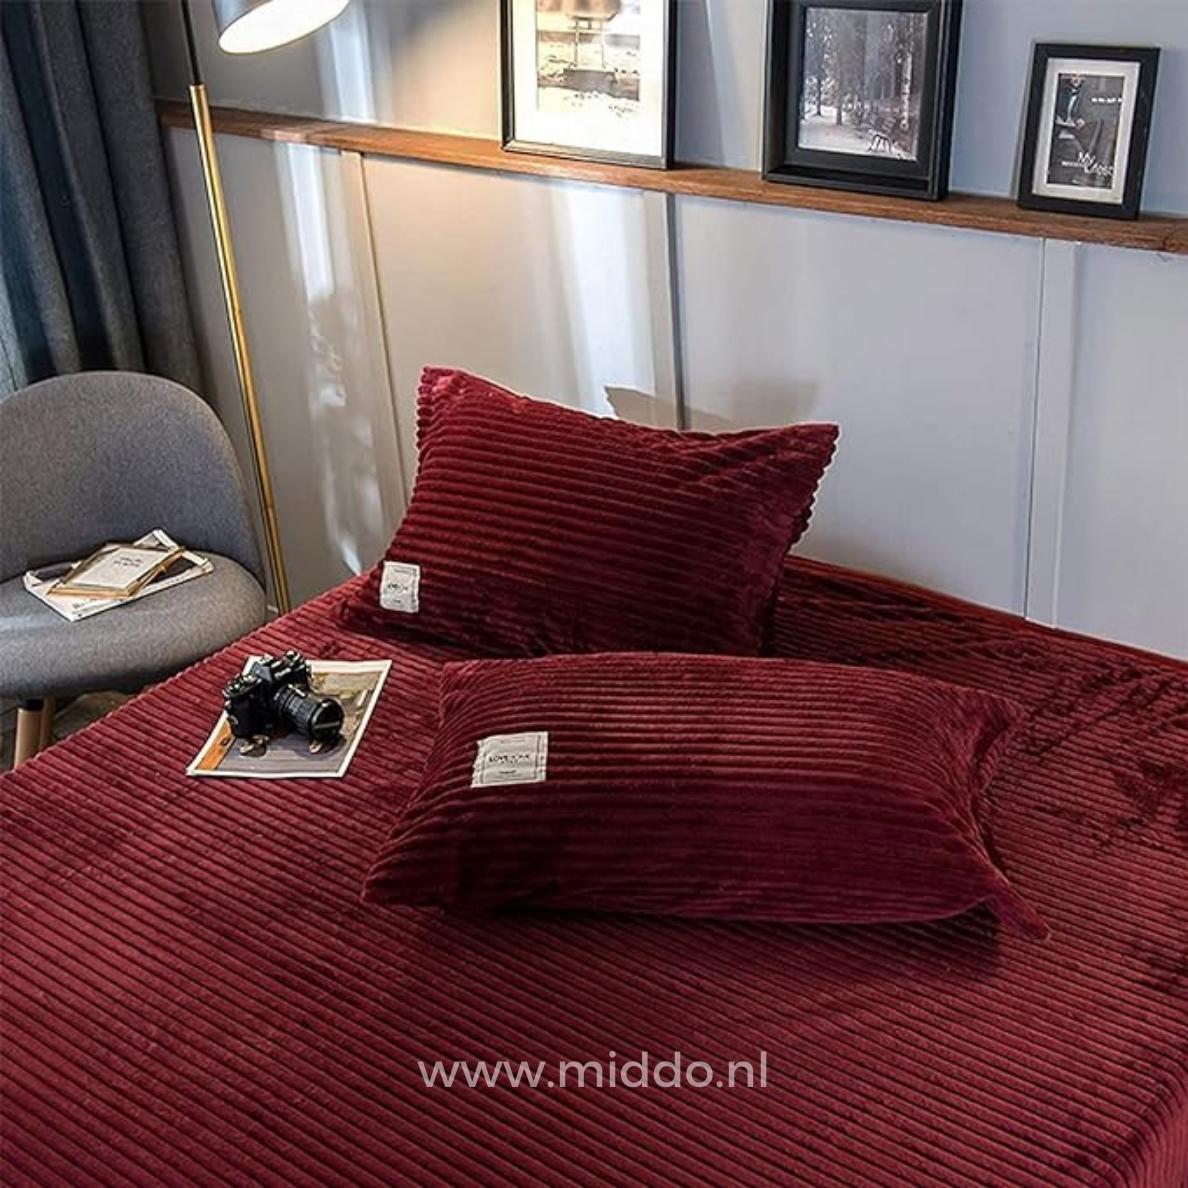 2 kussens met wijnrode kussenslopen op een bed